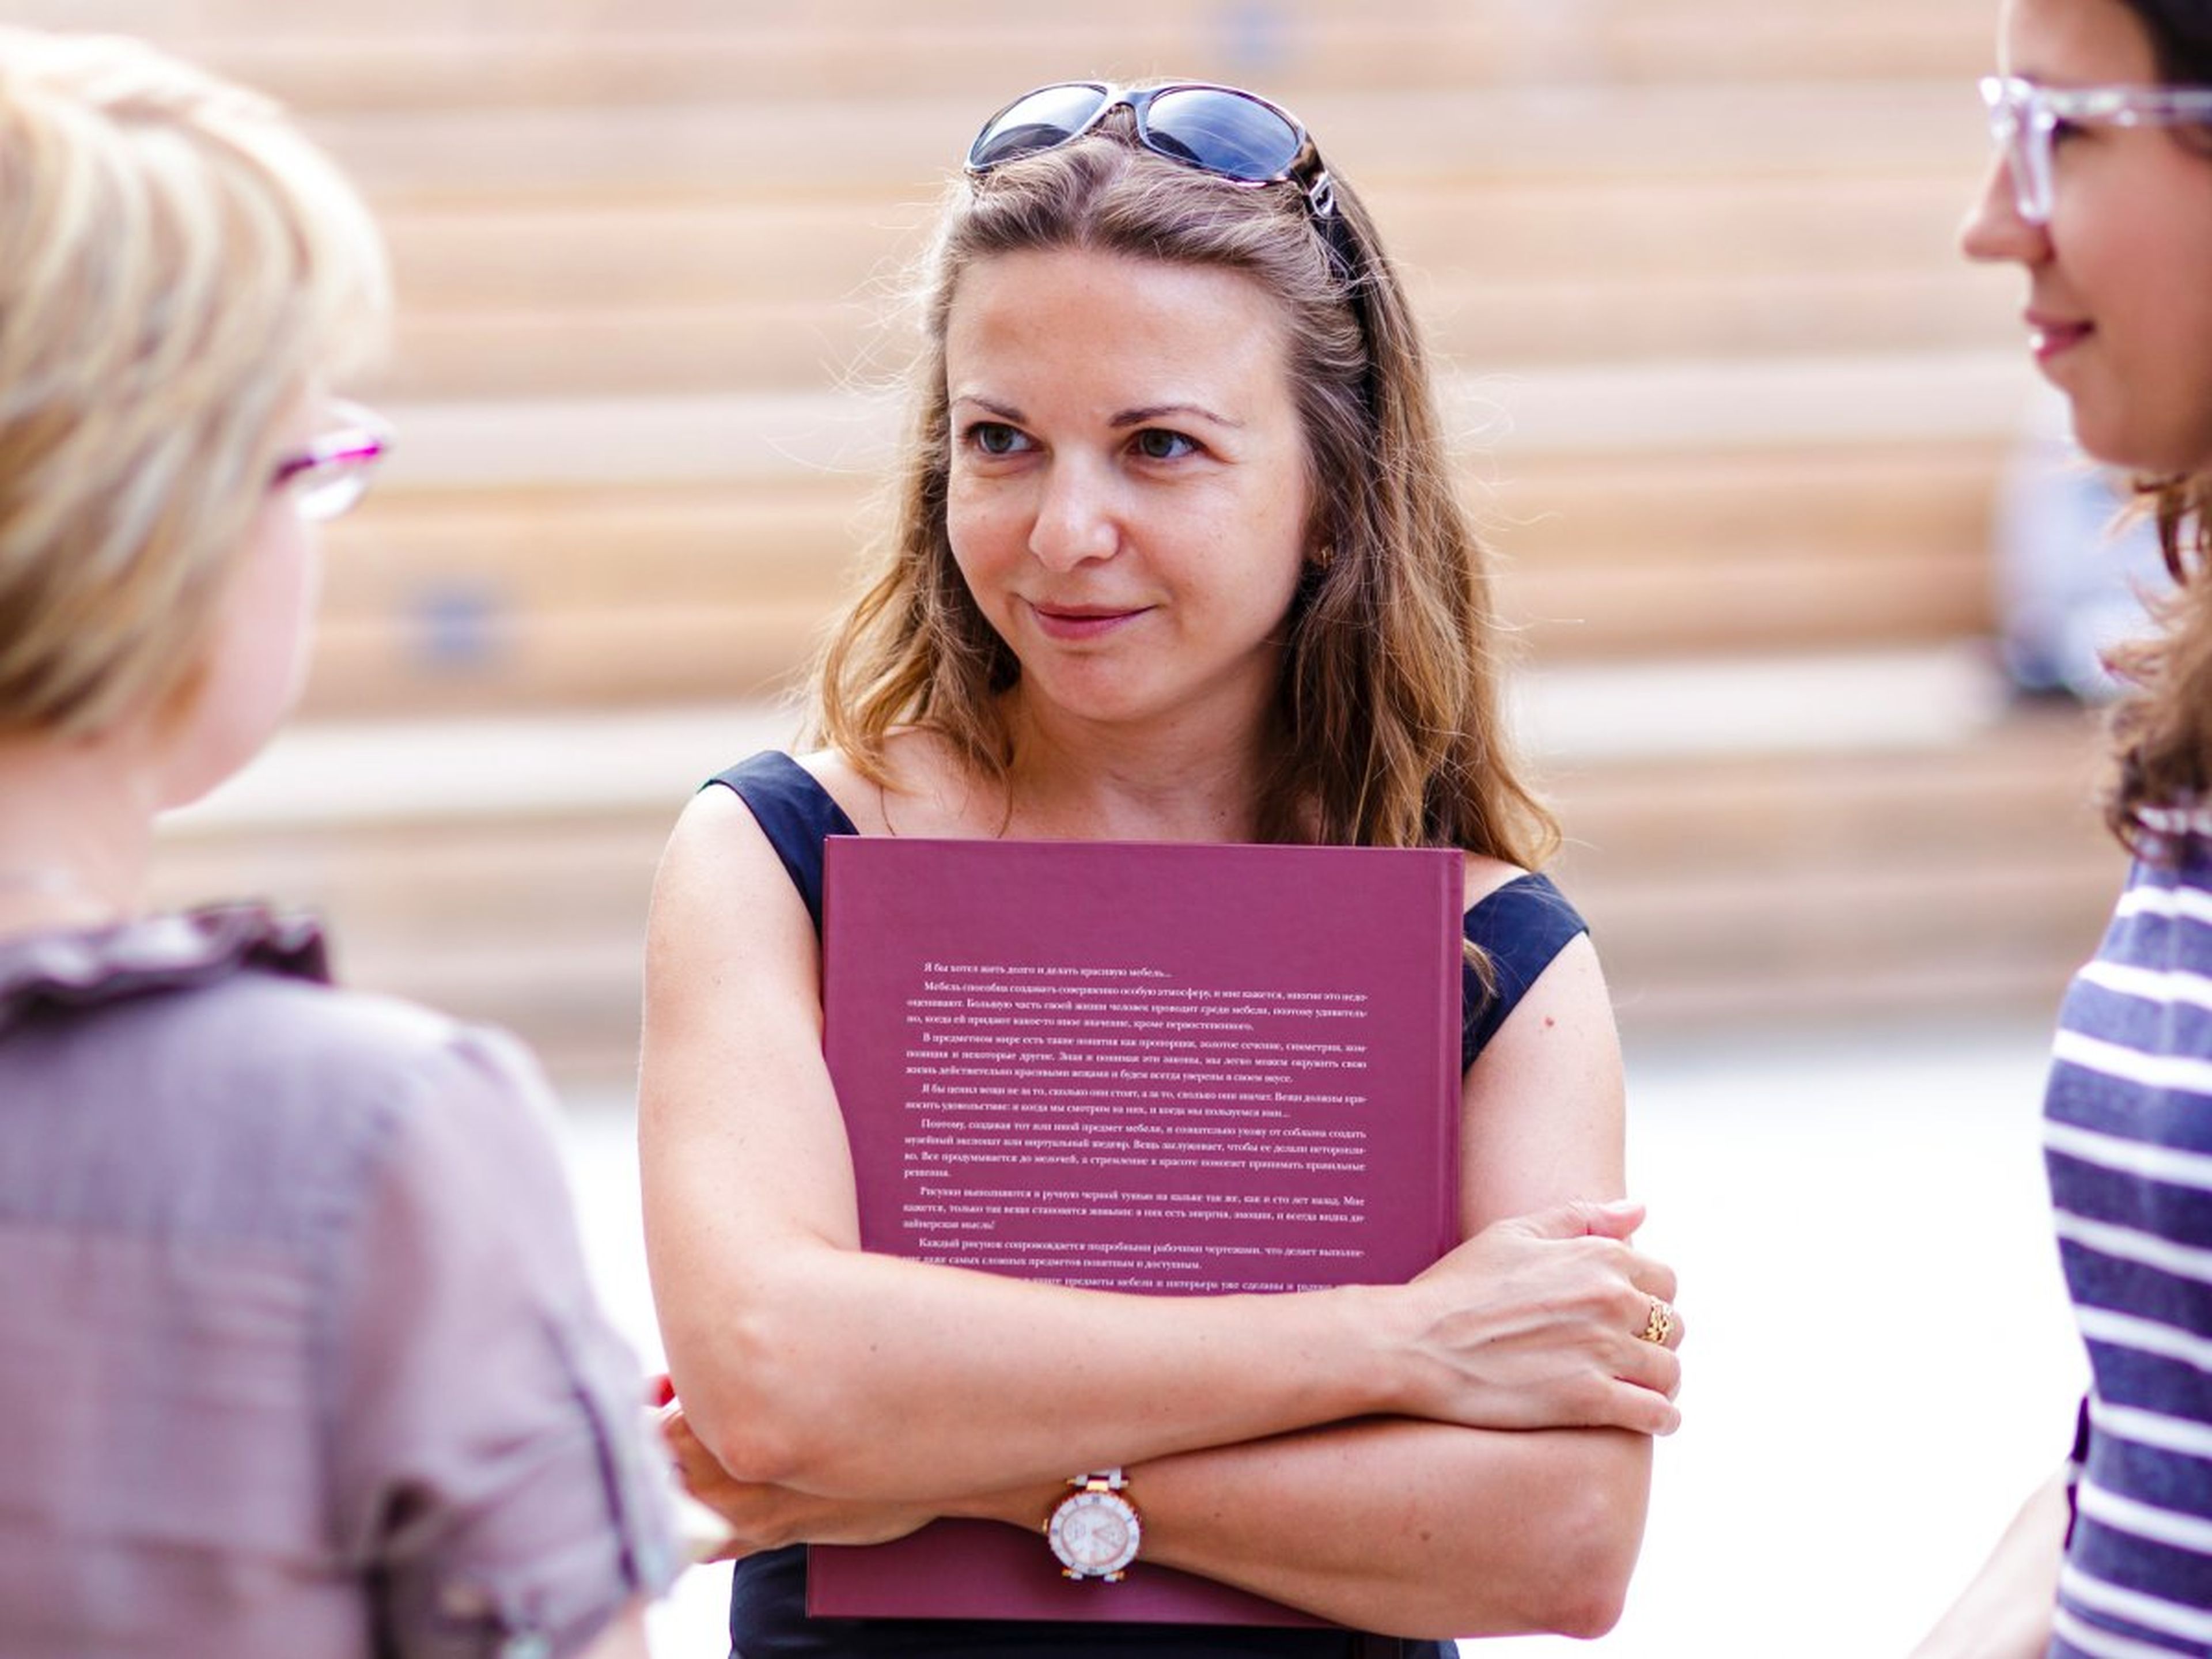 Una mujer sujeta un libro mientras mantiene una conversación con otras dos